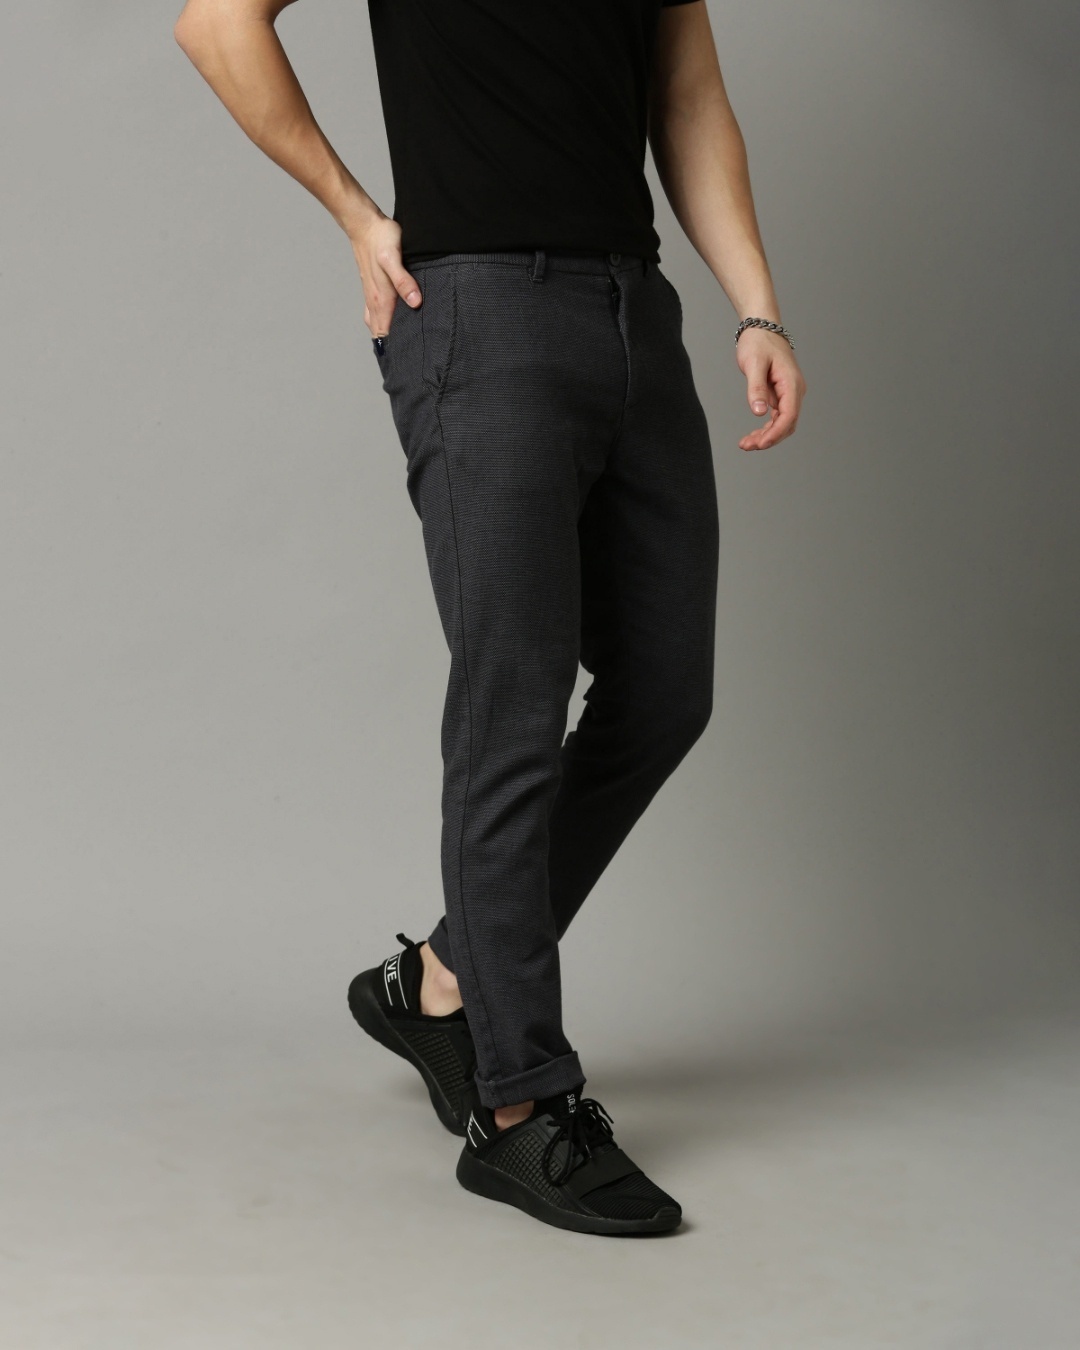 Buy Men's Grey Slim Fit Trouser for Men Grey Online at Bewakoof